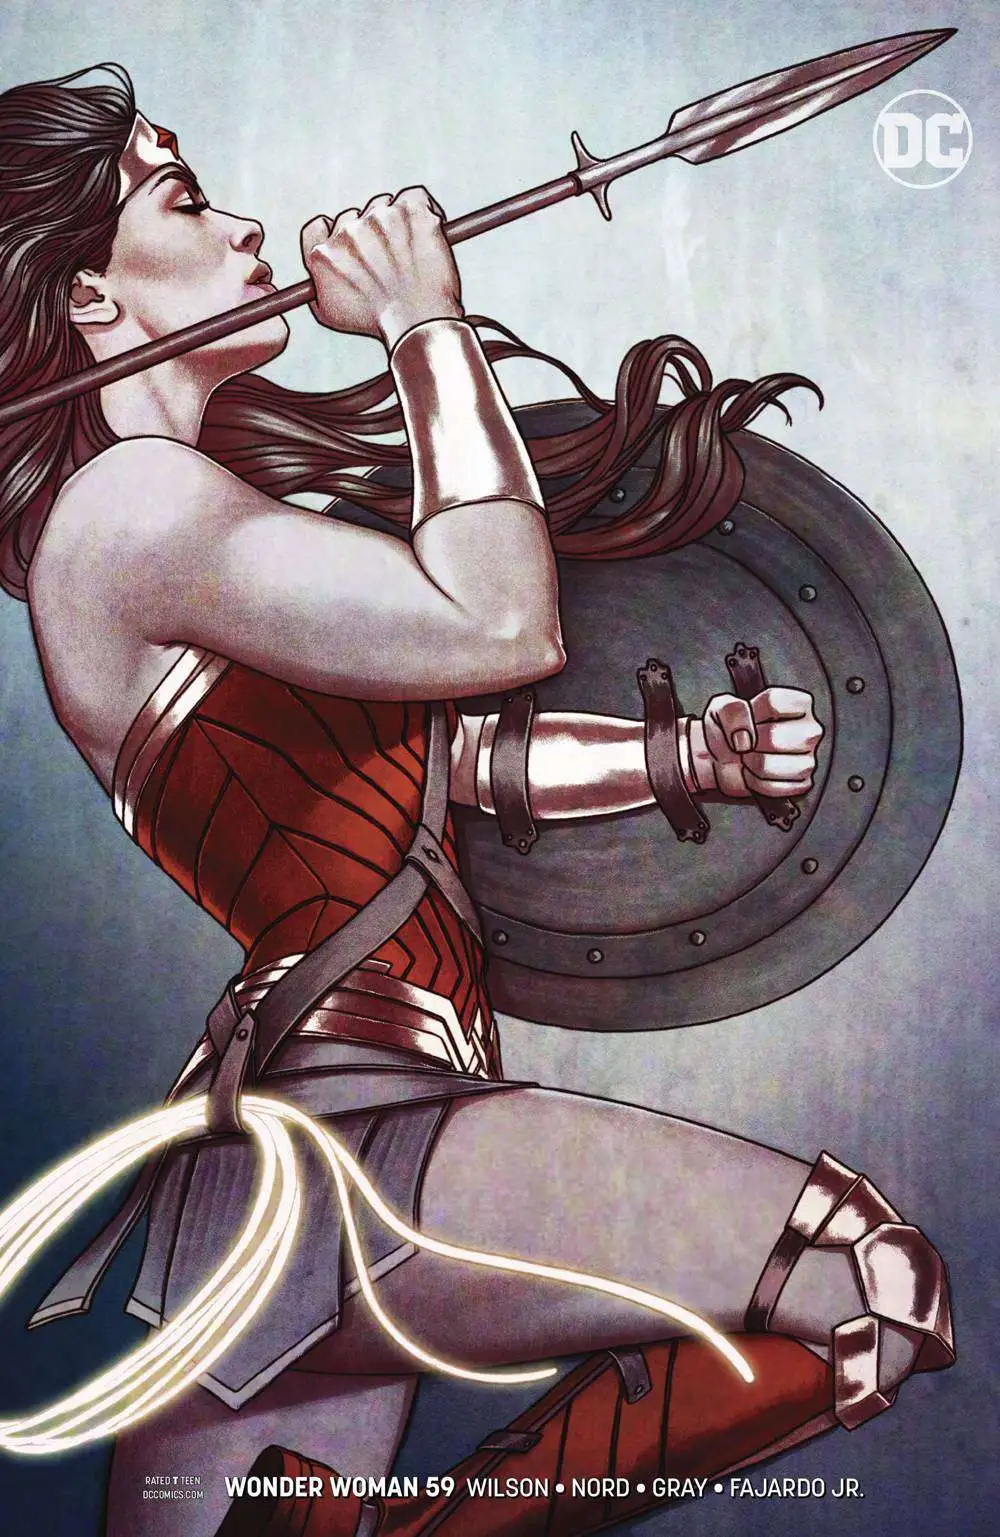 Details about   DC Comics WONDER WOMAN #57 Jenny Frison Cover B Variant NM/M 